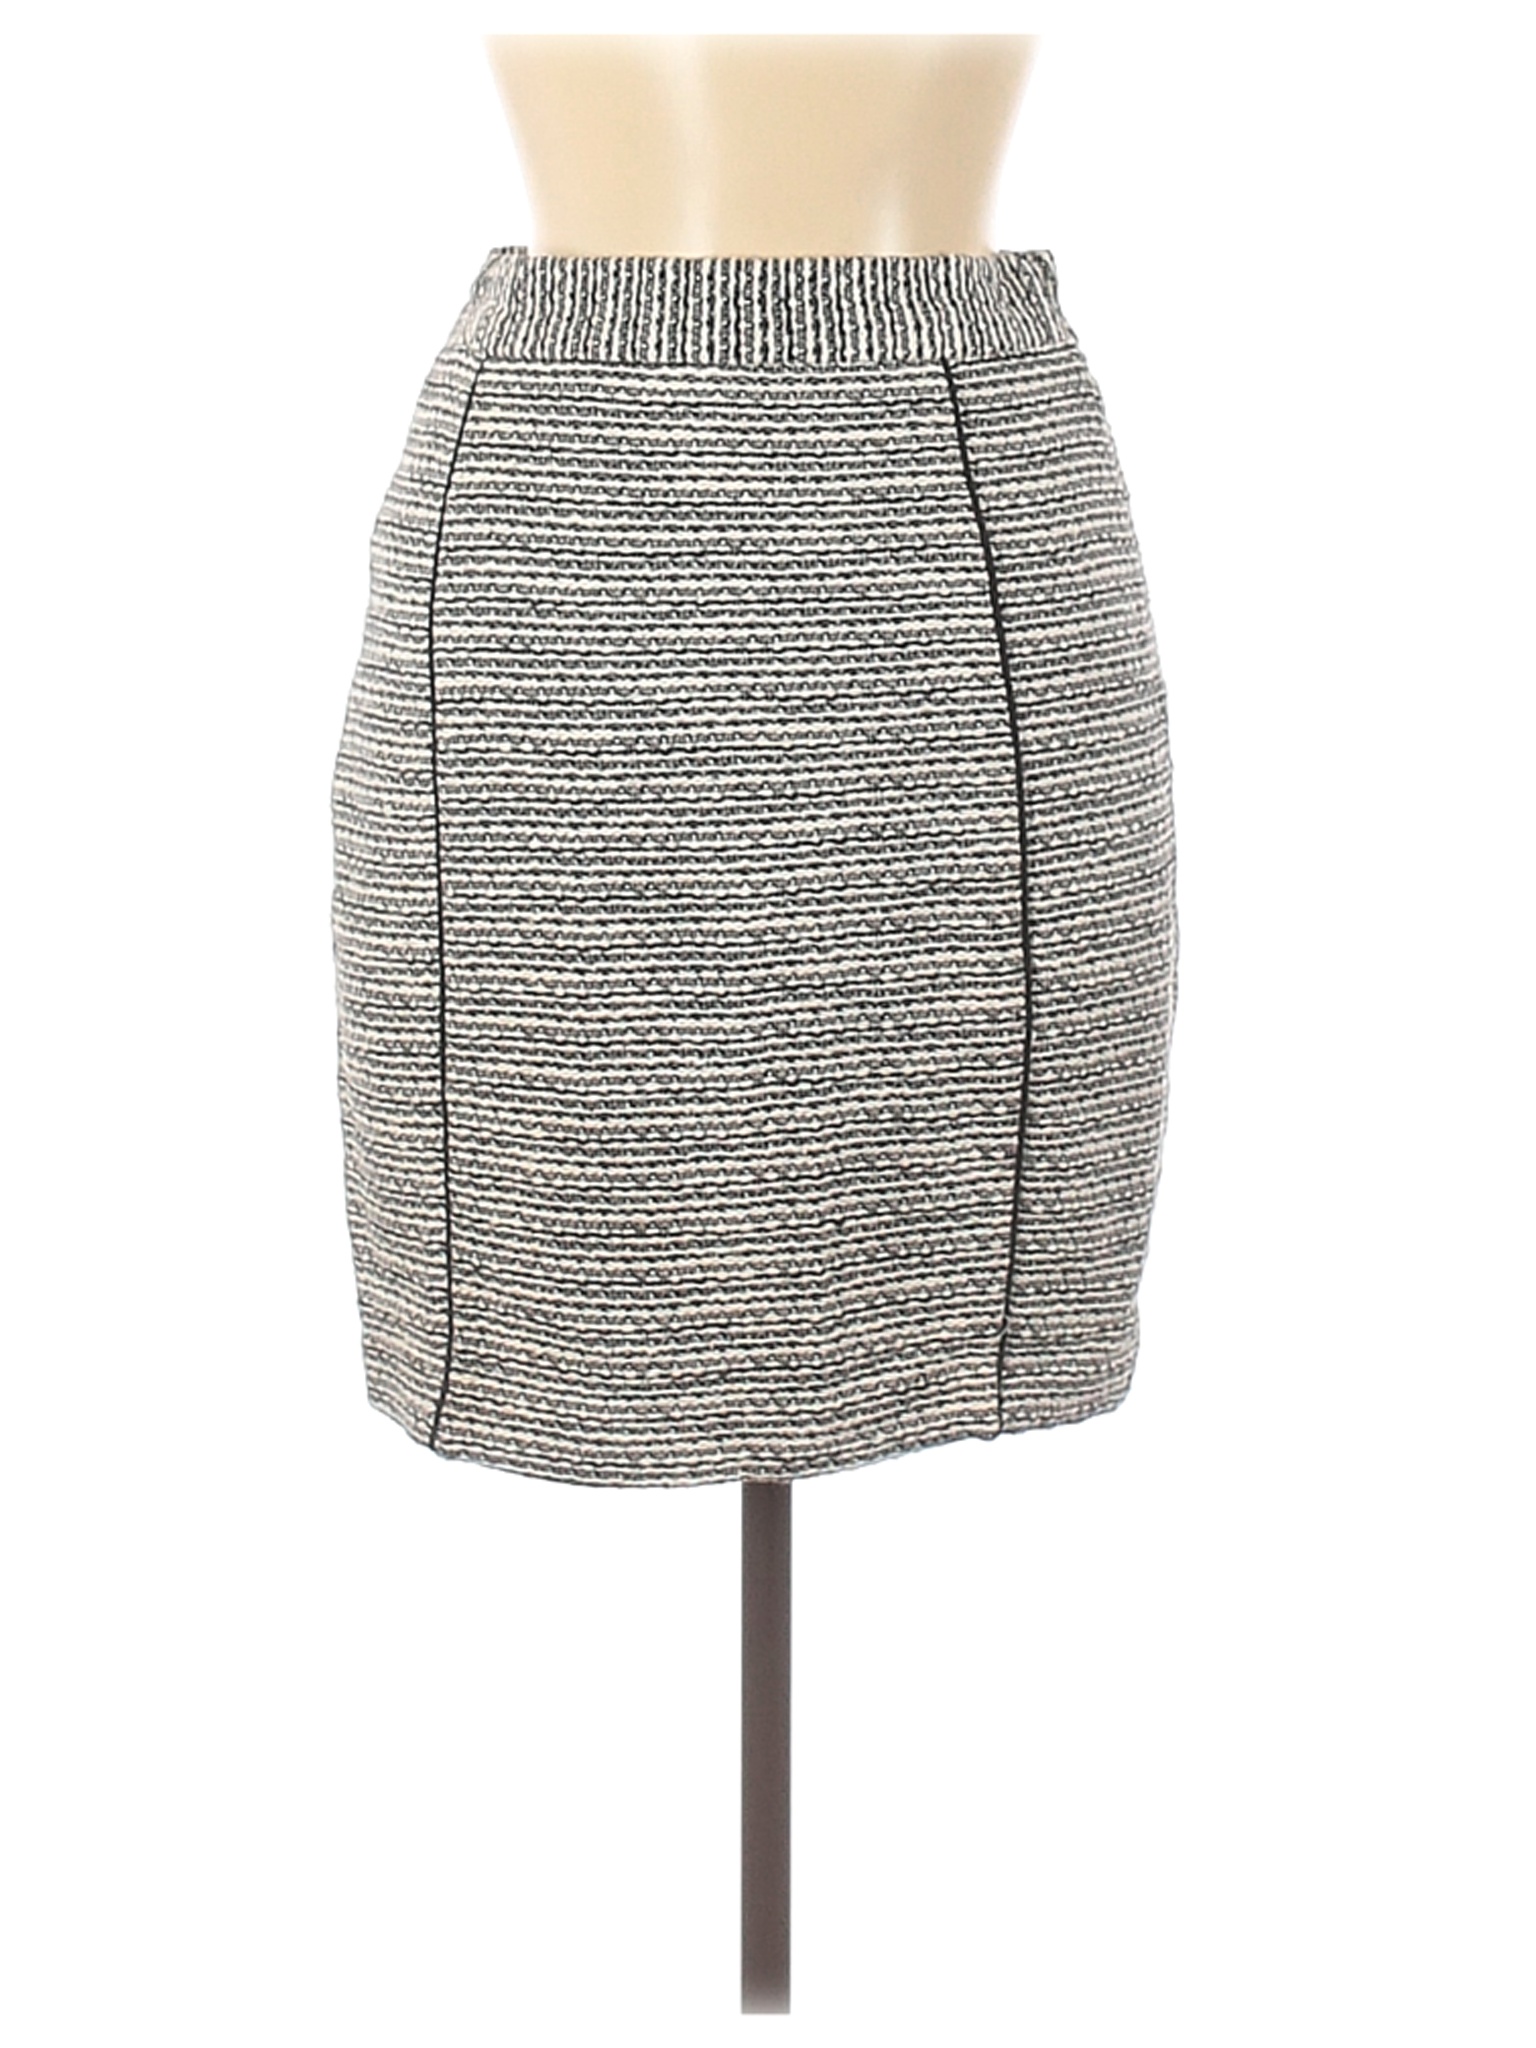 H&M Women White Casual Skirt 8 | eBay